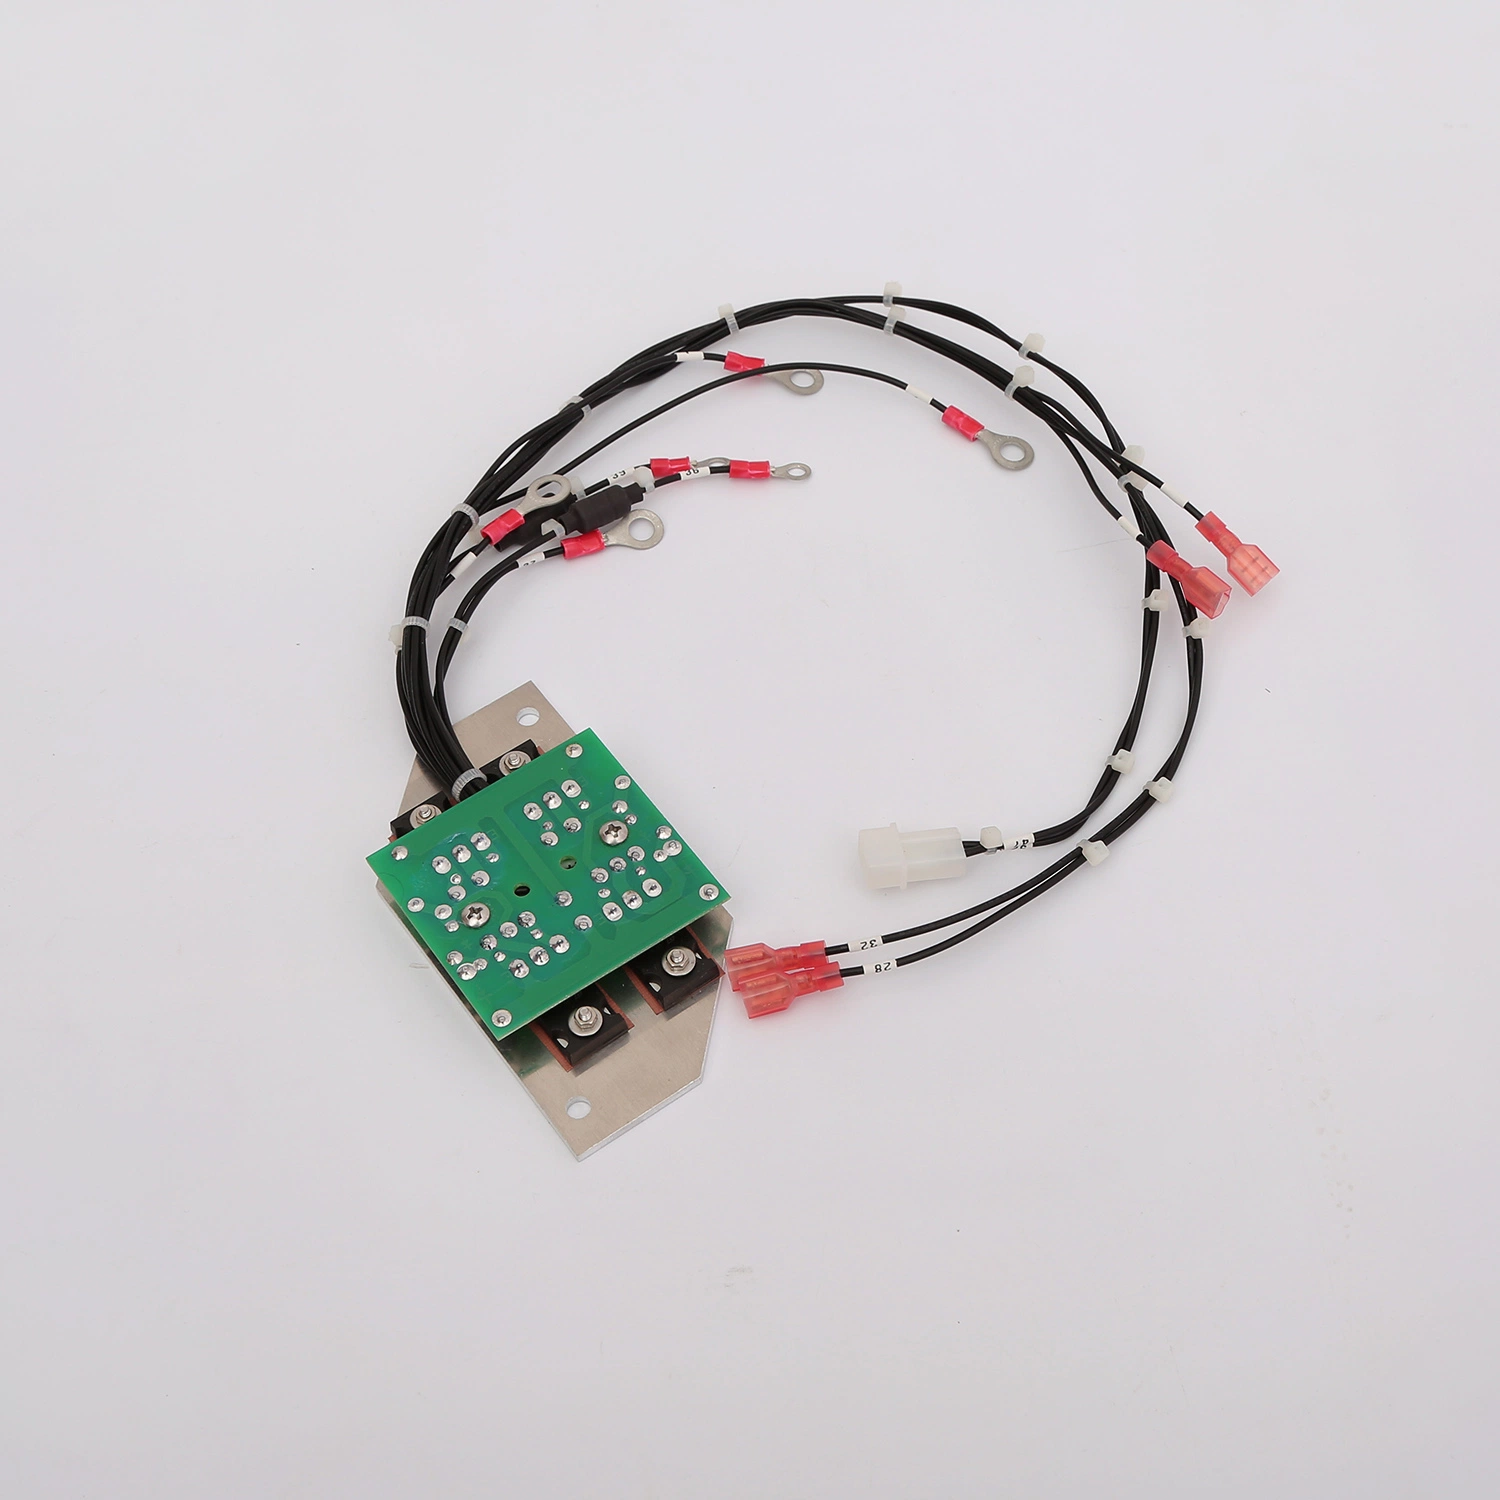 OEM multicapa con reducción de ruido de circuito impreso PCB Asamblea prototipo personalizadas placa PCB FABRICACIÓN PCB electrónicos OEM hacer